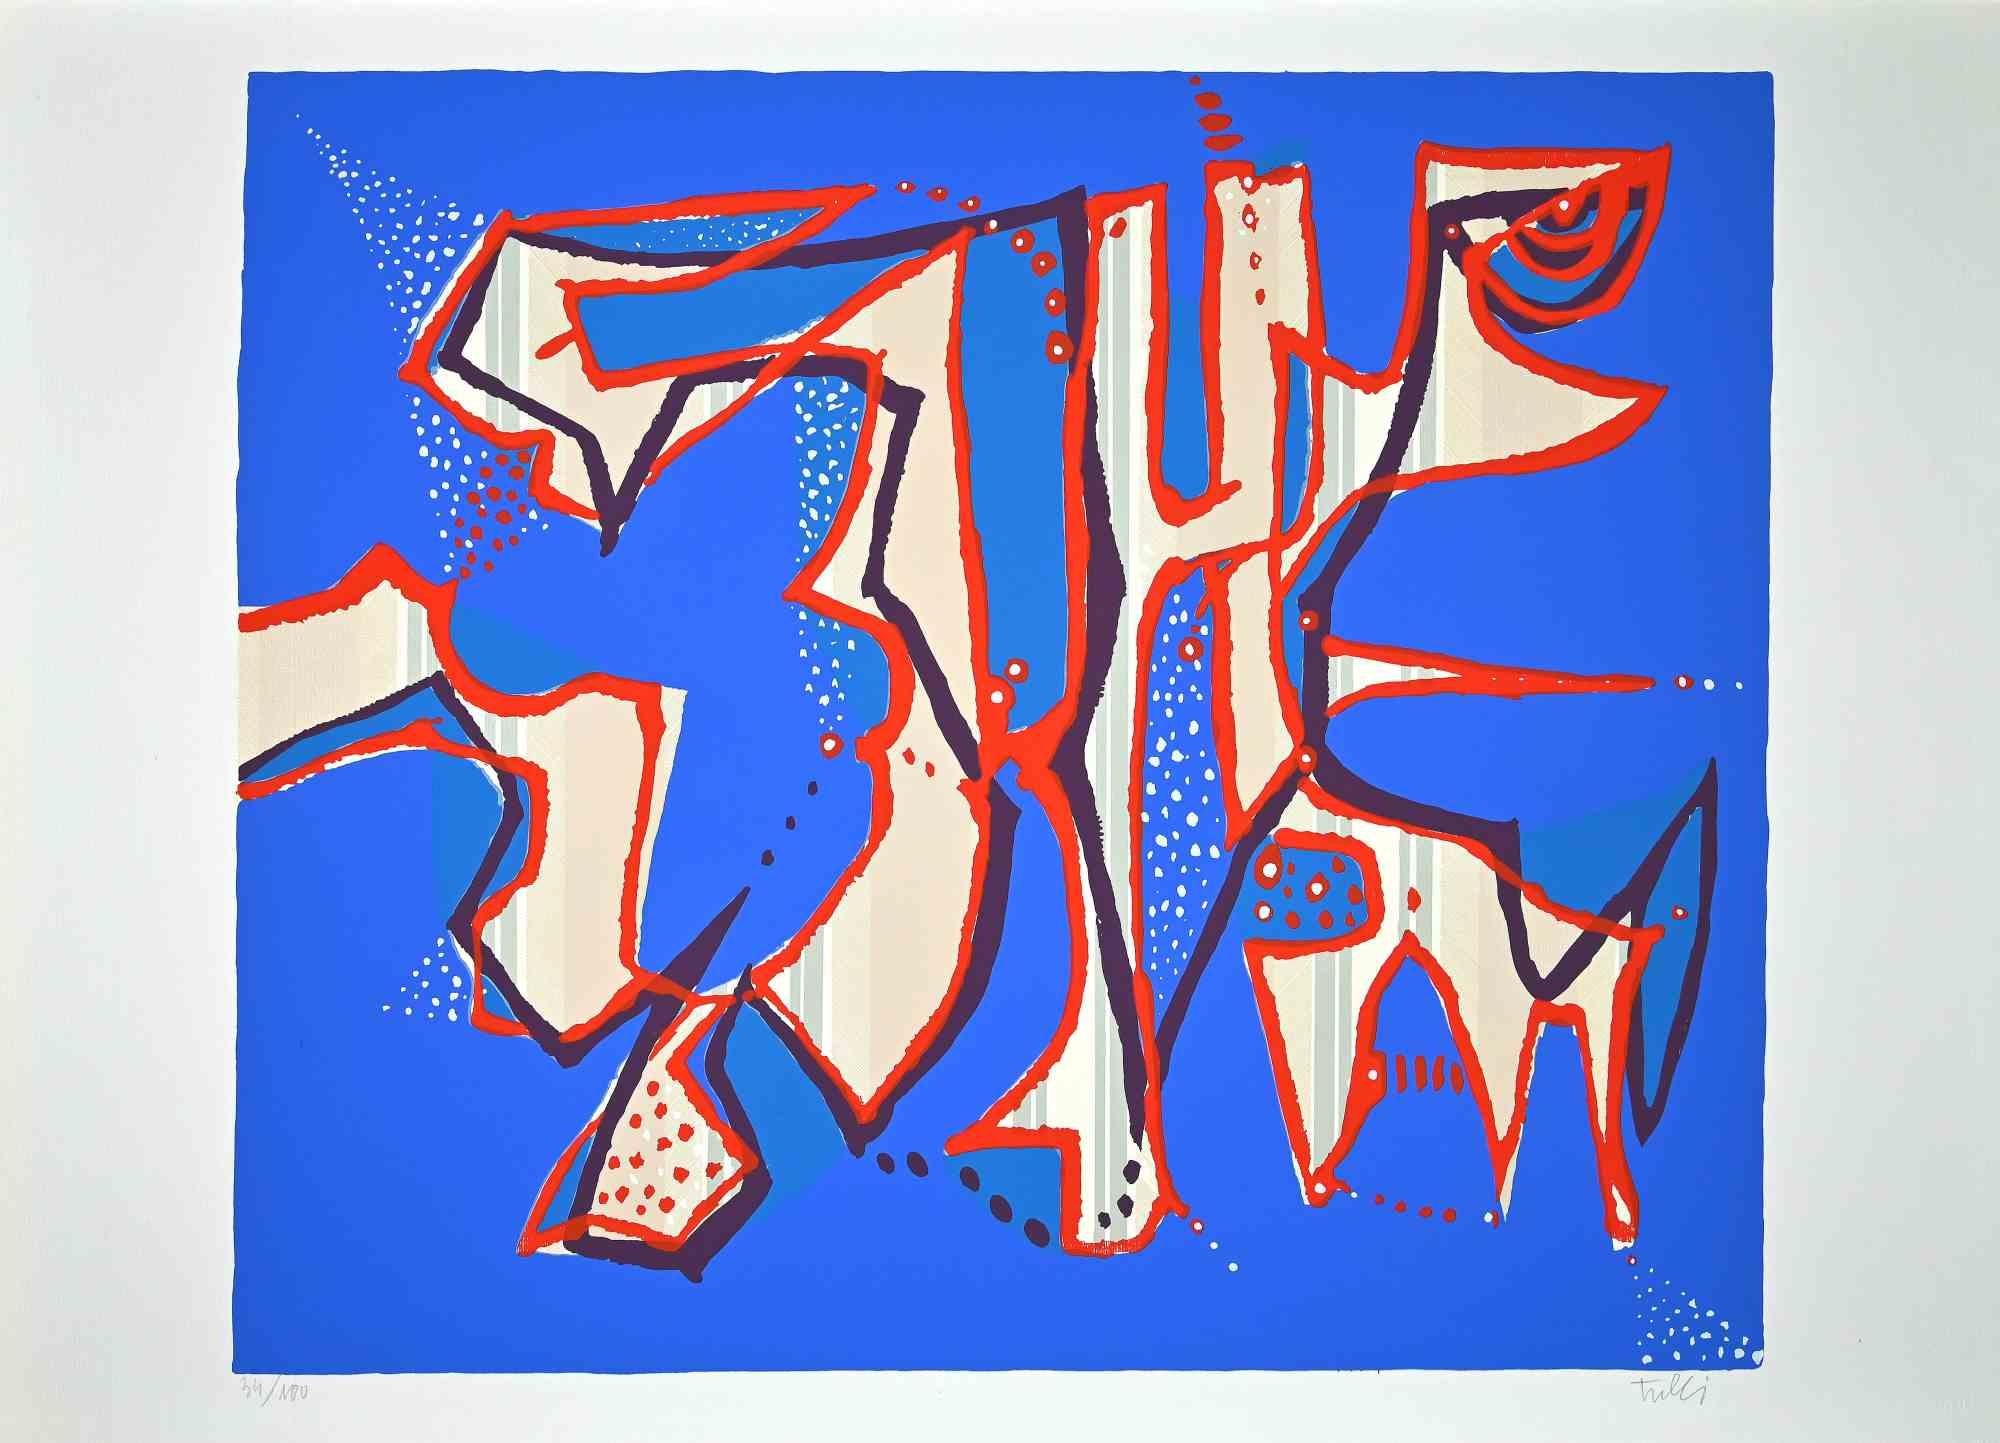 Composition in Blue est une sérigraphie colorée sur papier, réalisée dans les années 1970 par l'artiste italien  Wladimiro Tulli.
Signé à la main en bas à droite et numéroté au crayon dans la marge inférieure. Edition de 34/100 tirages.

Très bonnes